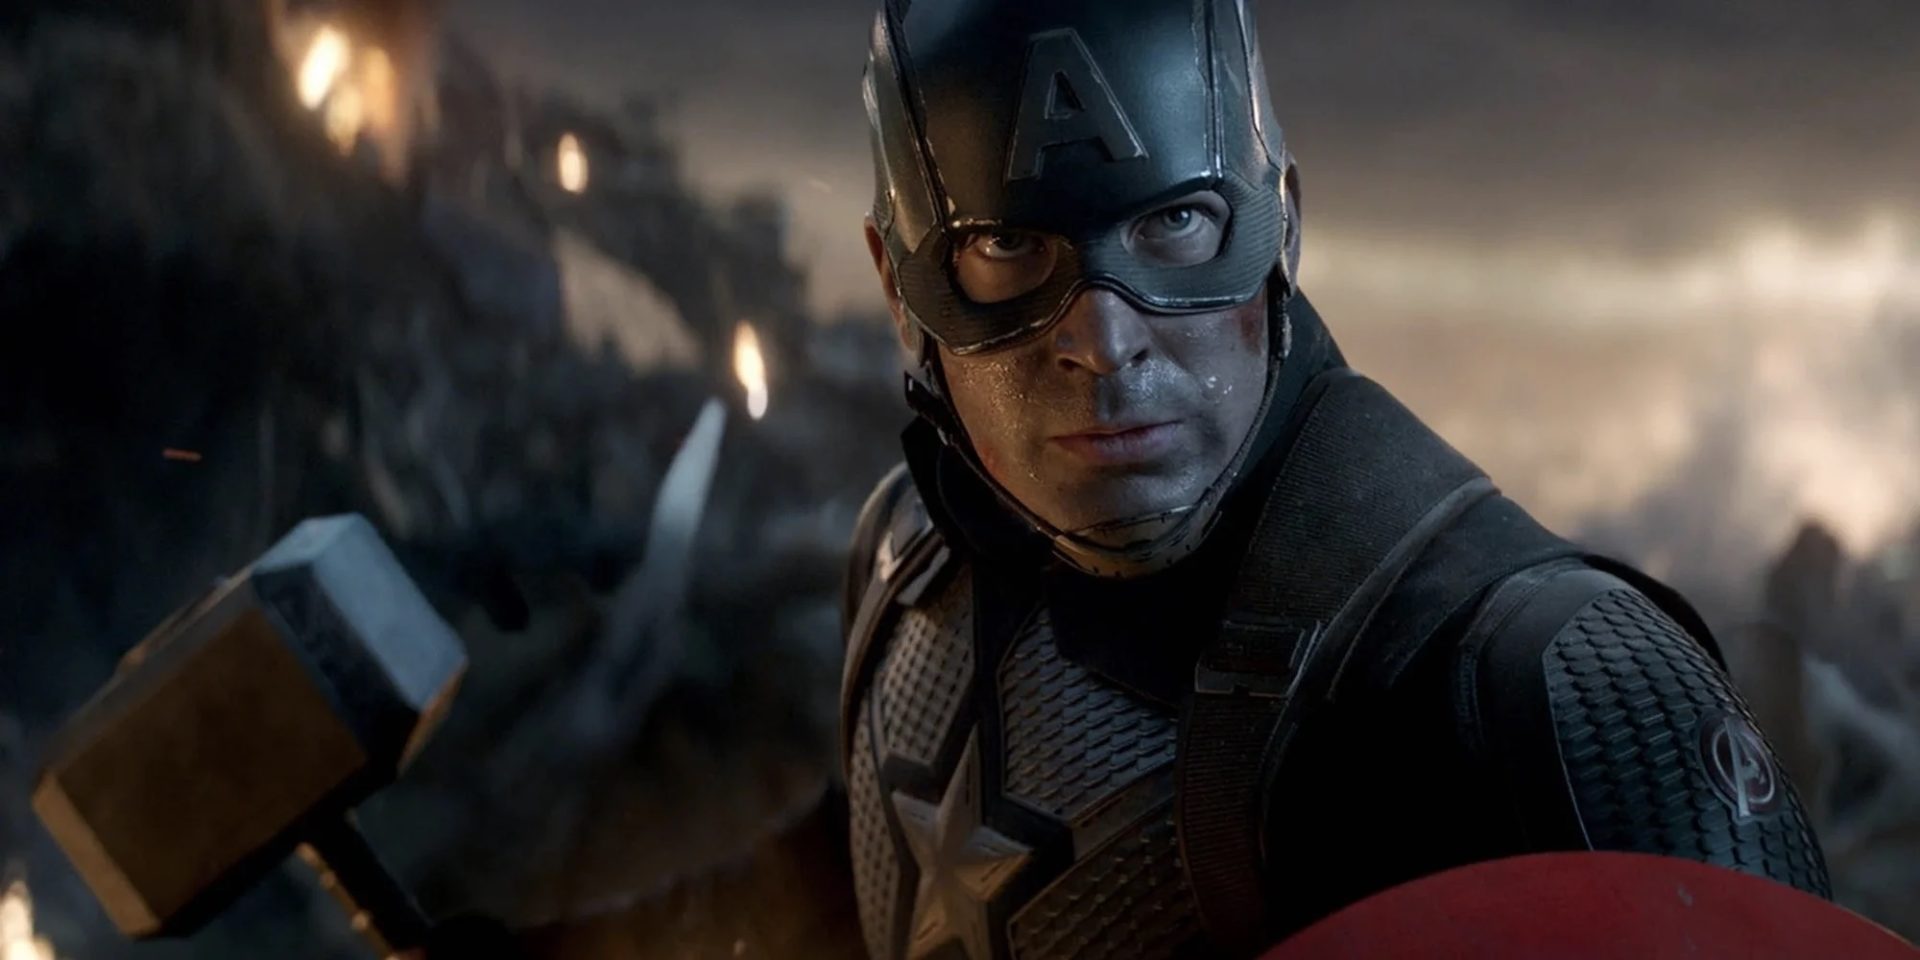 'Vingadores: Ultimato' se tornou um marco para o cinema